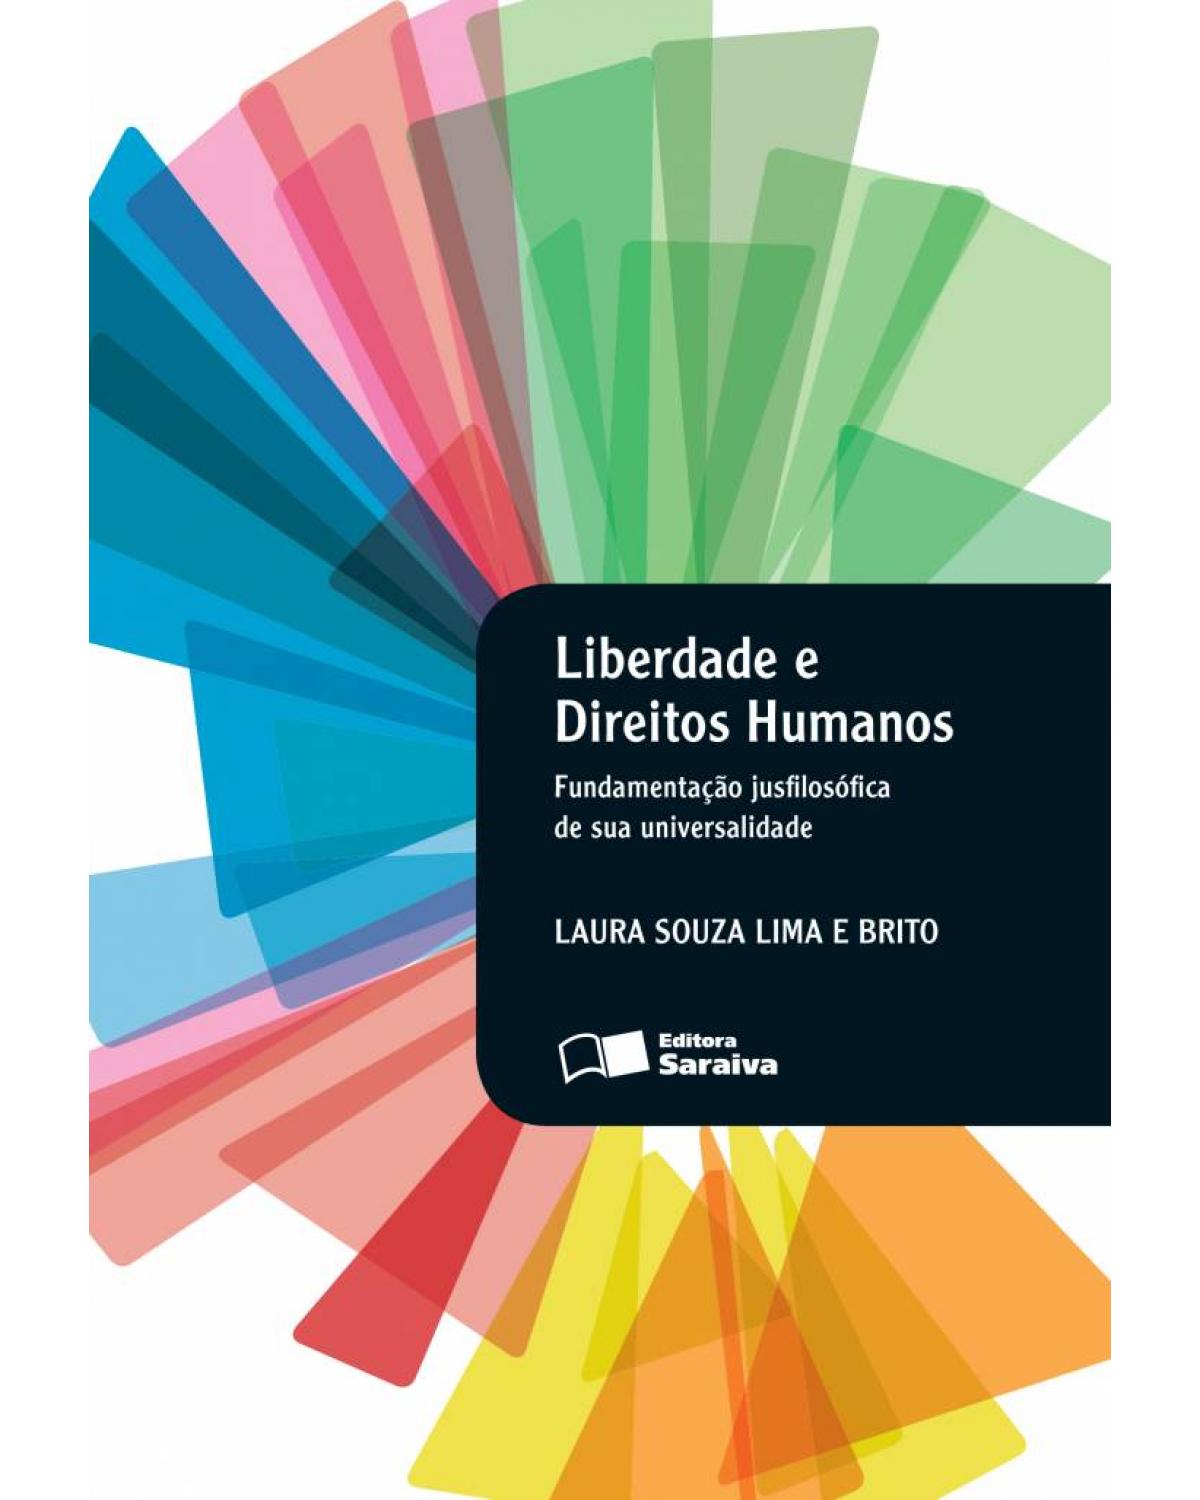 Liberdade e direitos humanos - fundamentação jusfilosófica de sua universalidade - 1ª Edição | 2013